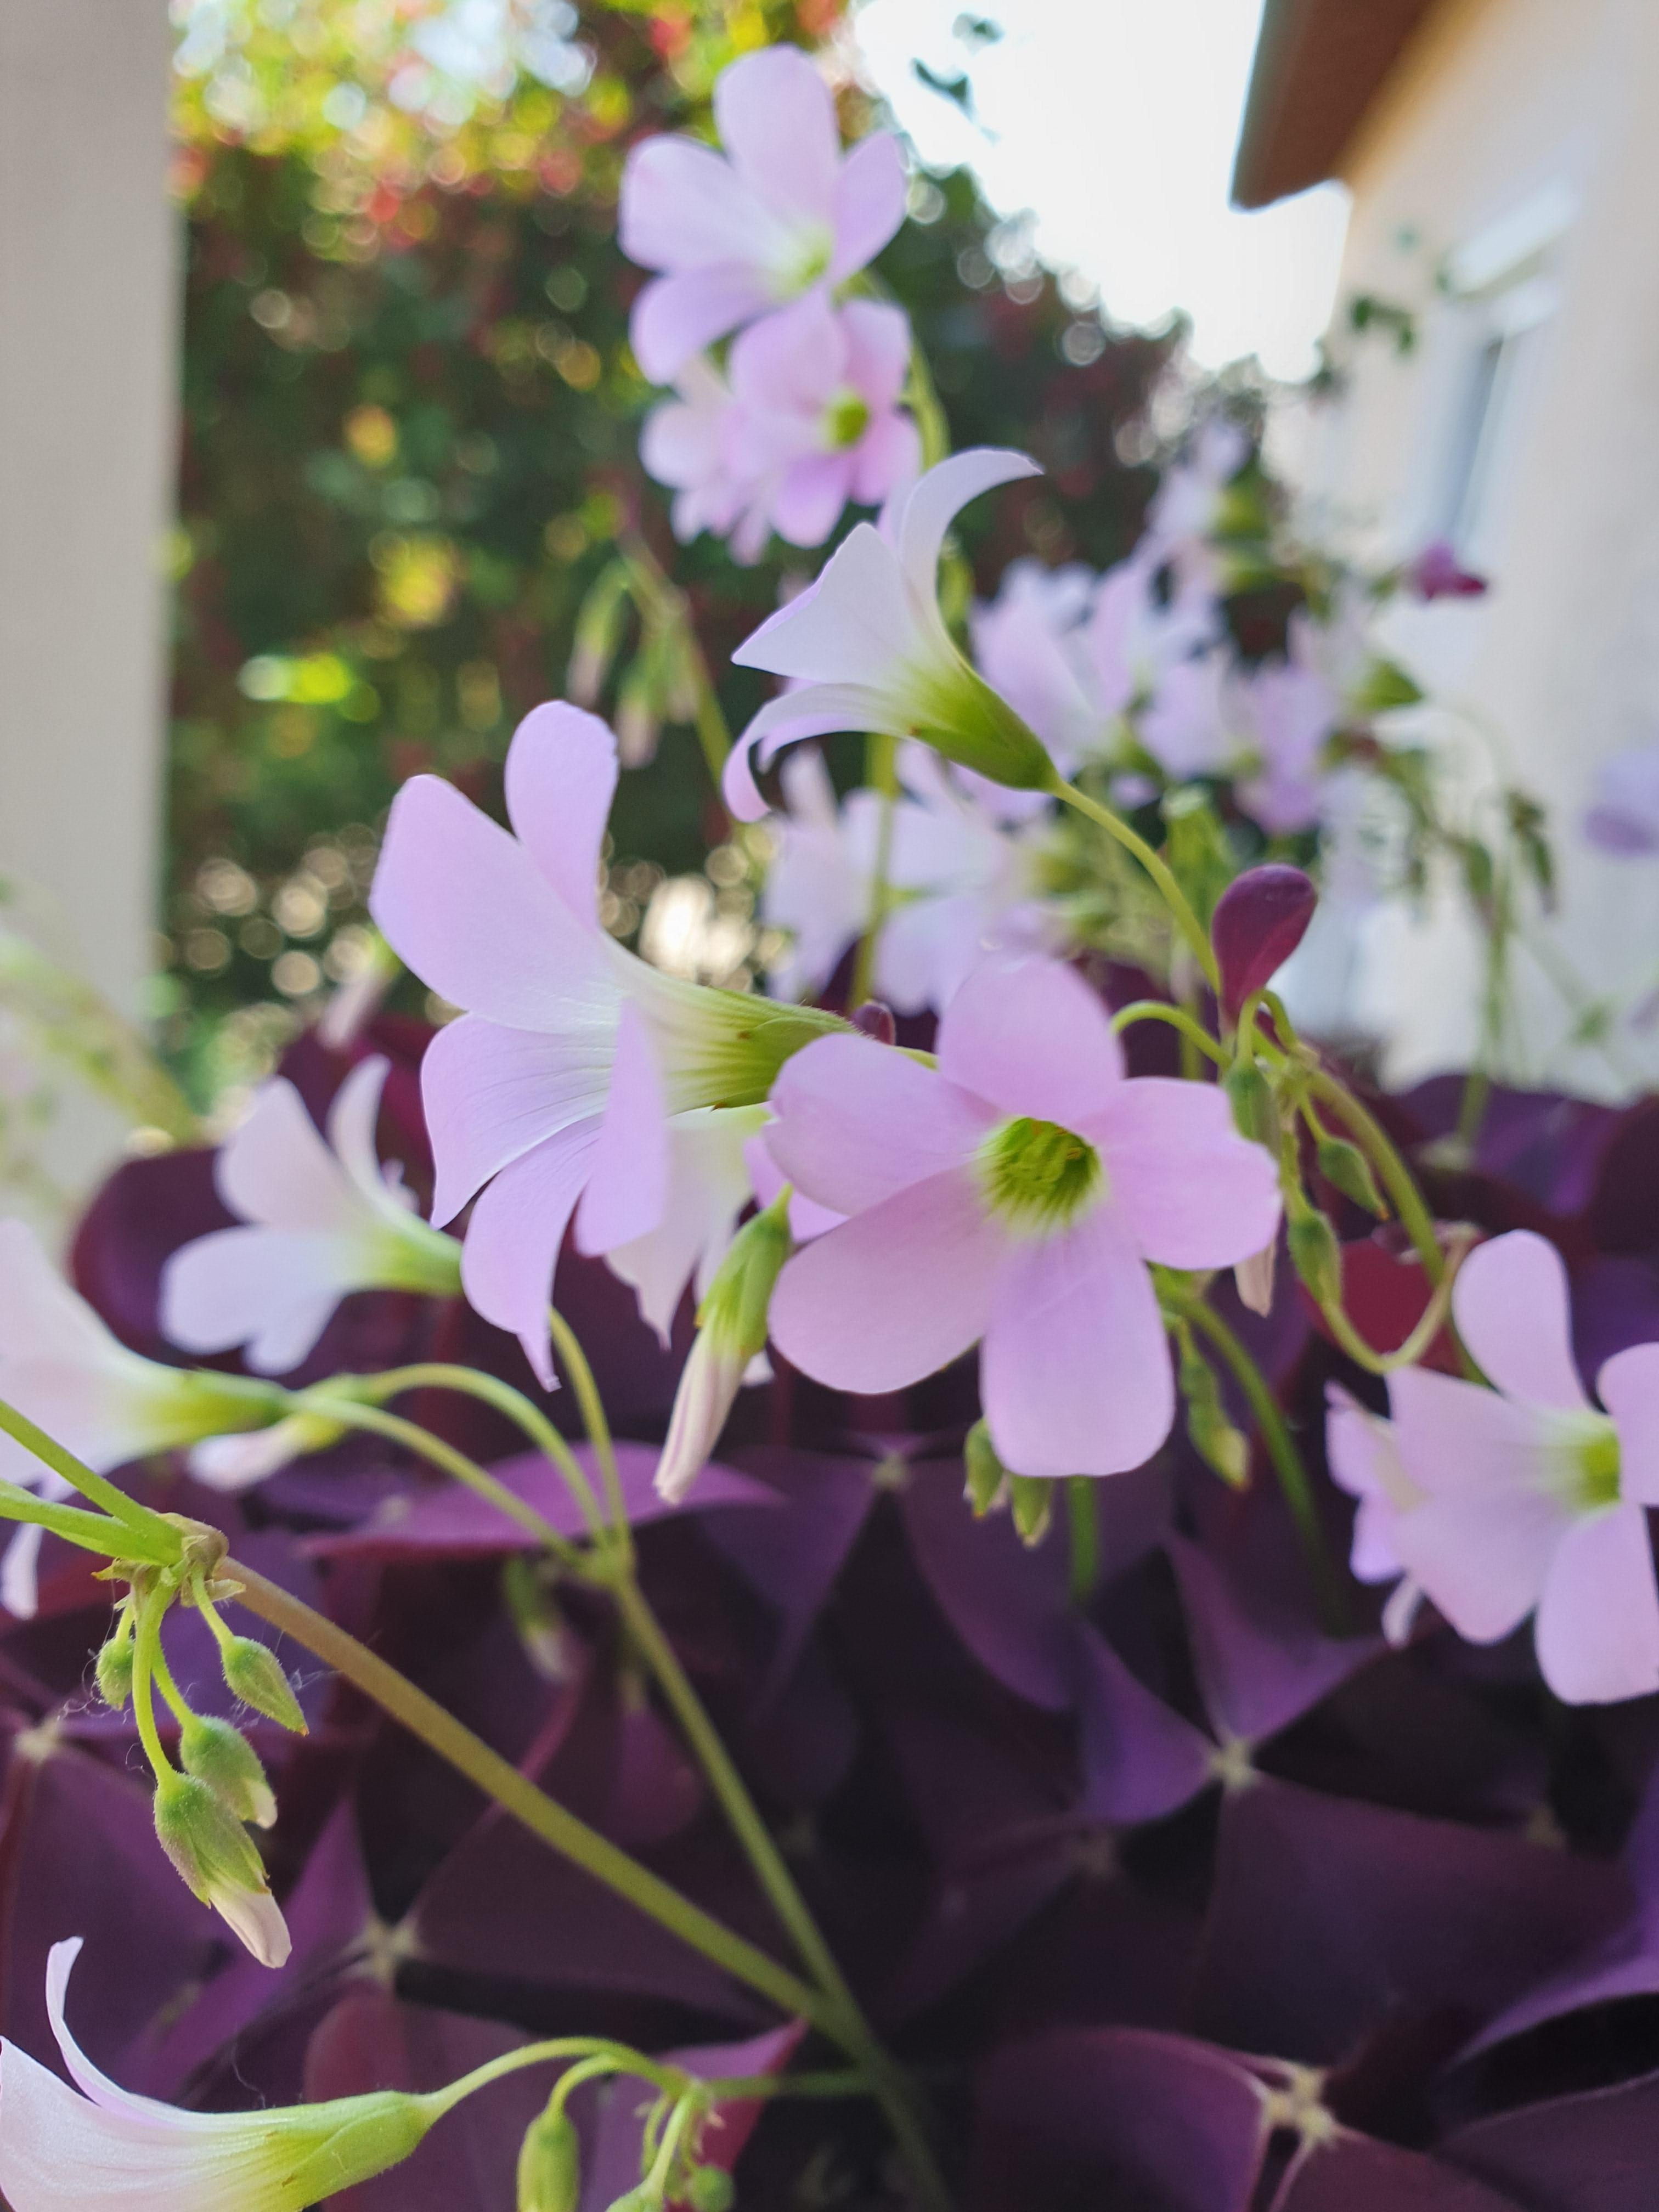 Blumiger Empfang an der Haustüre 
#klee hat so viel Schönheit #frühling #blumen #flowers #flowerpower